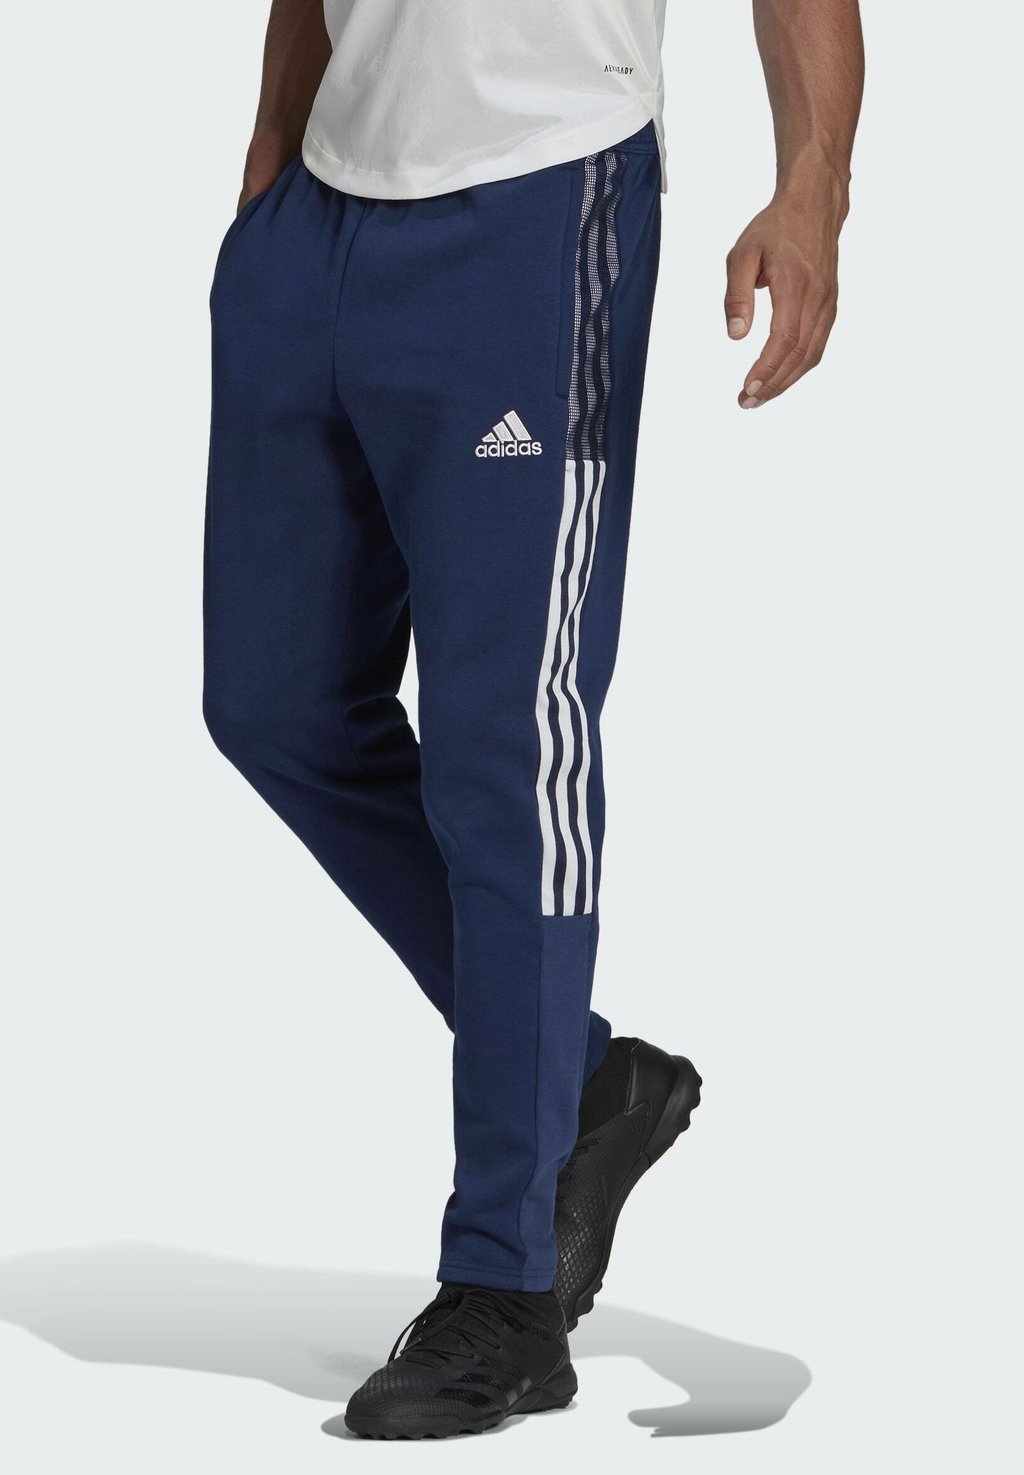 брюки мужские adidas sq21 sw pnt s Спортивные брюки Tiro21 Sw Pnt Adidas, синий